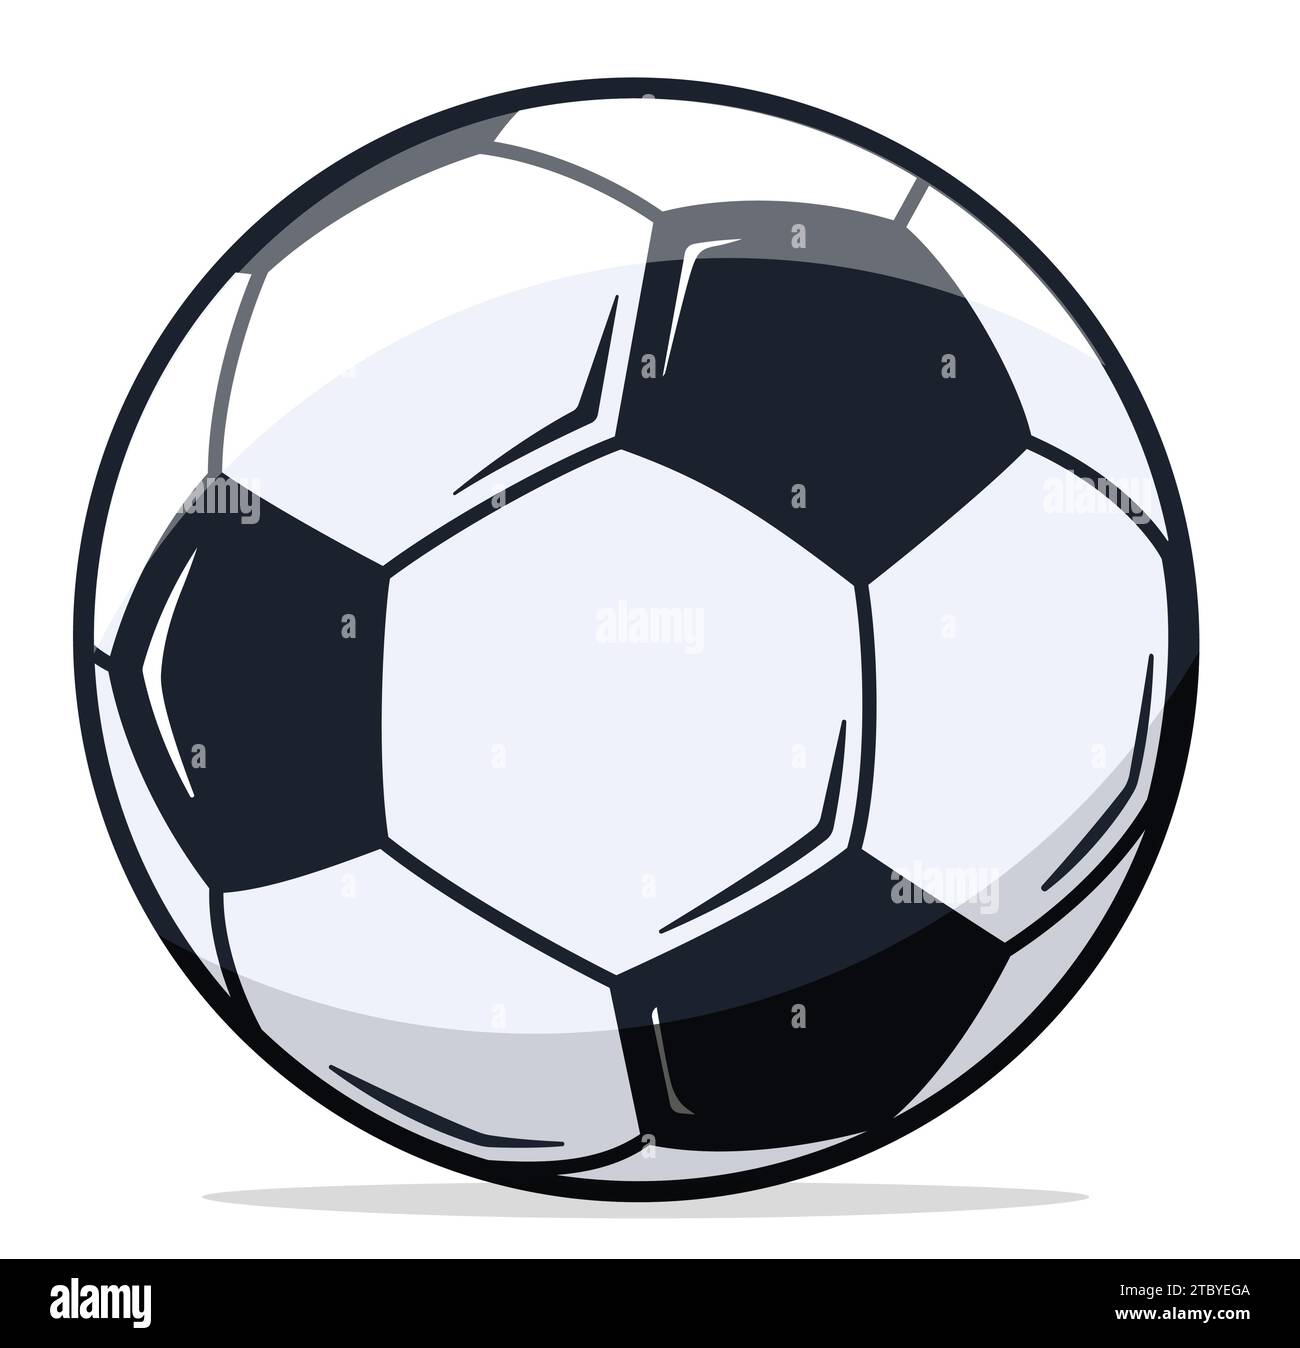 Immagine della palla da calcio su sfondo bianco Illustrazione Vettoriale